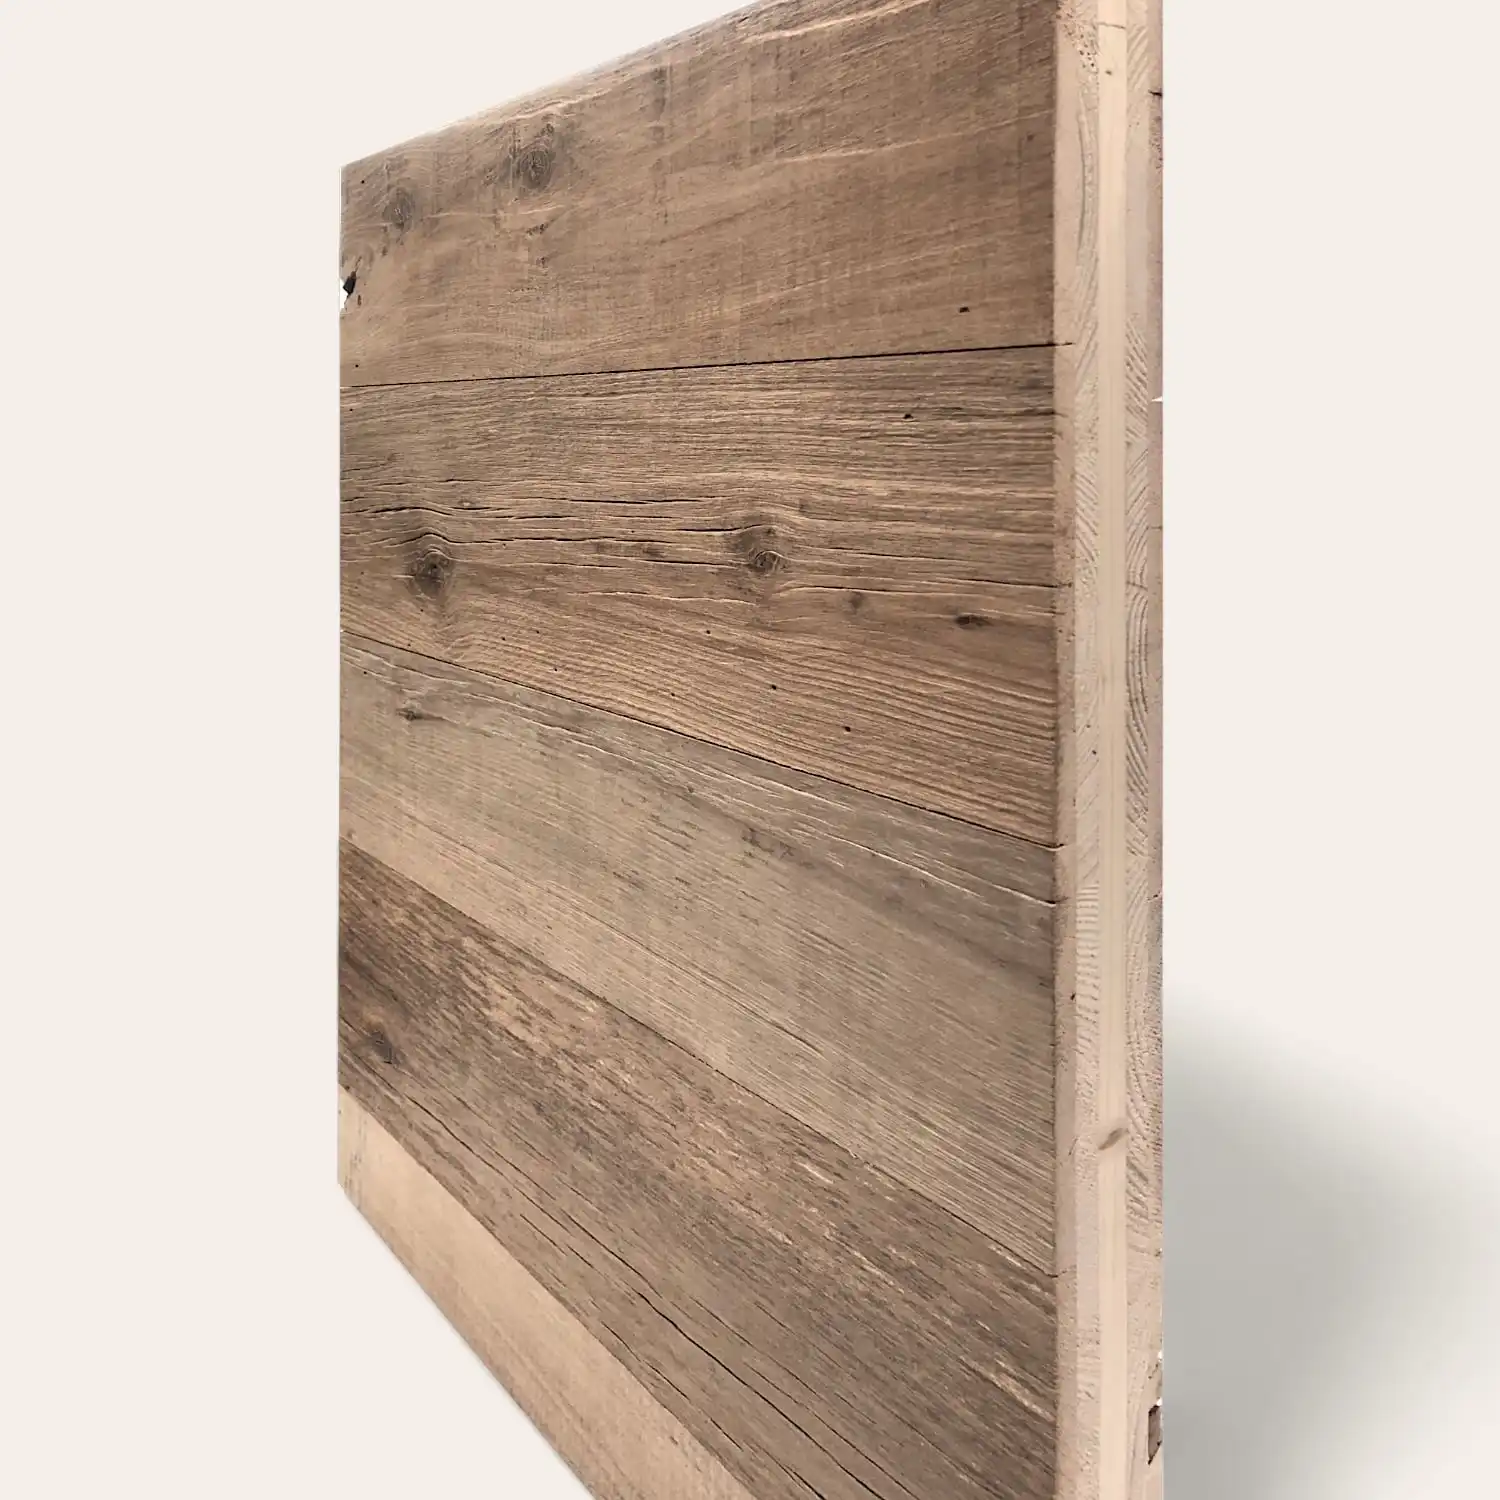  Une planche de bois avec des veines et des nœuds visibles, sur un fond blanc uni. Il s'agit d'un panneau 5 plis, vu de côté, montrant son épaisseur. 